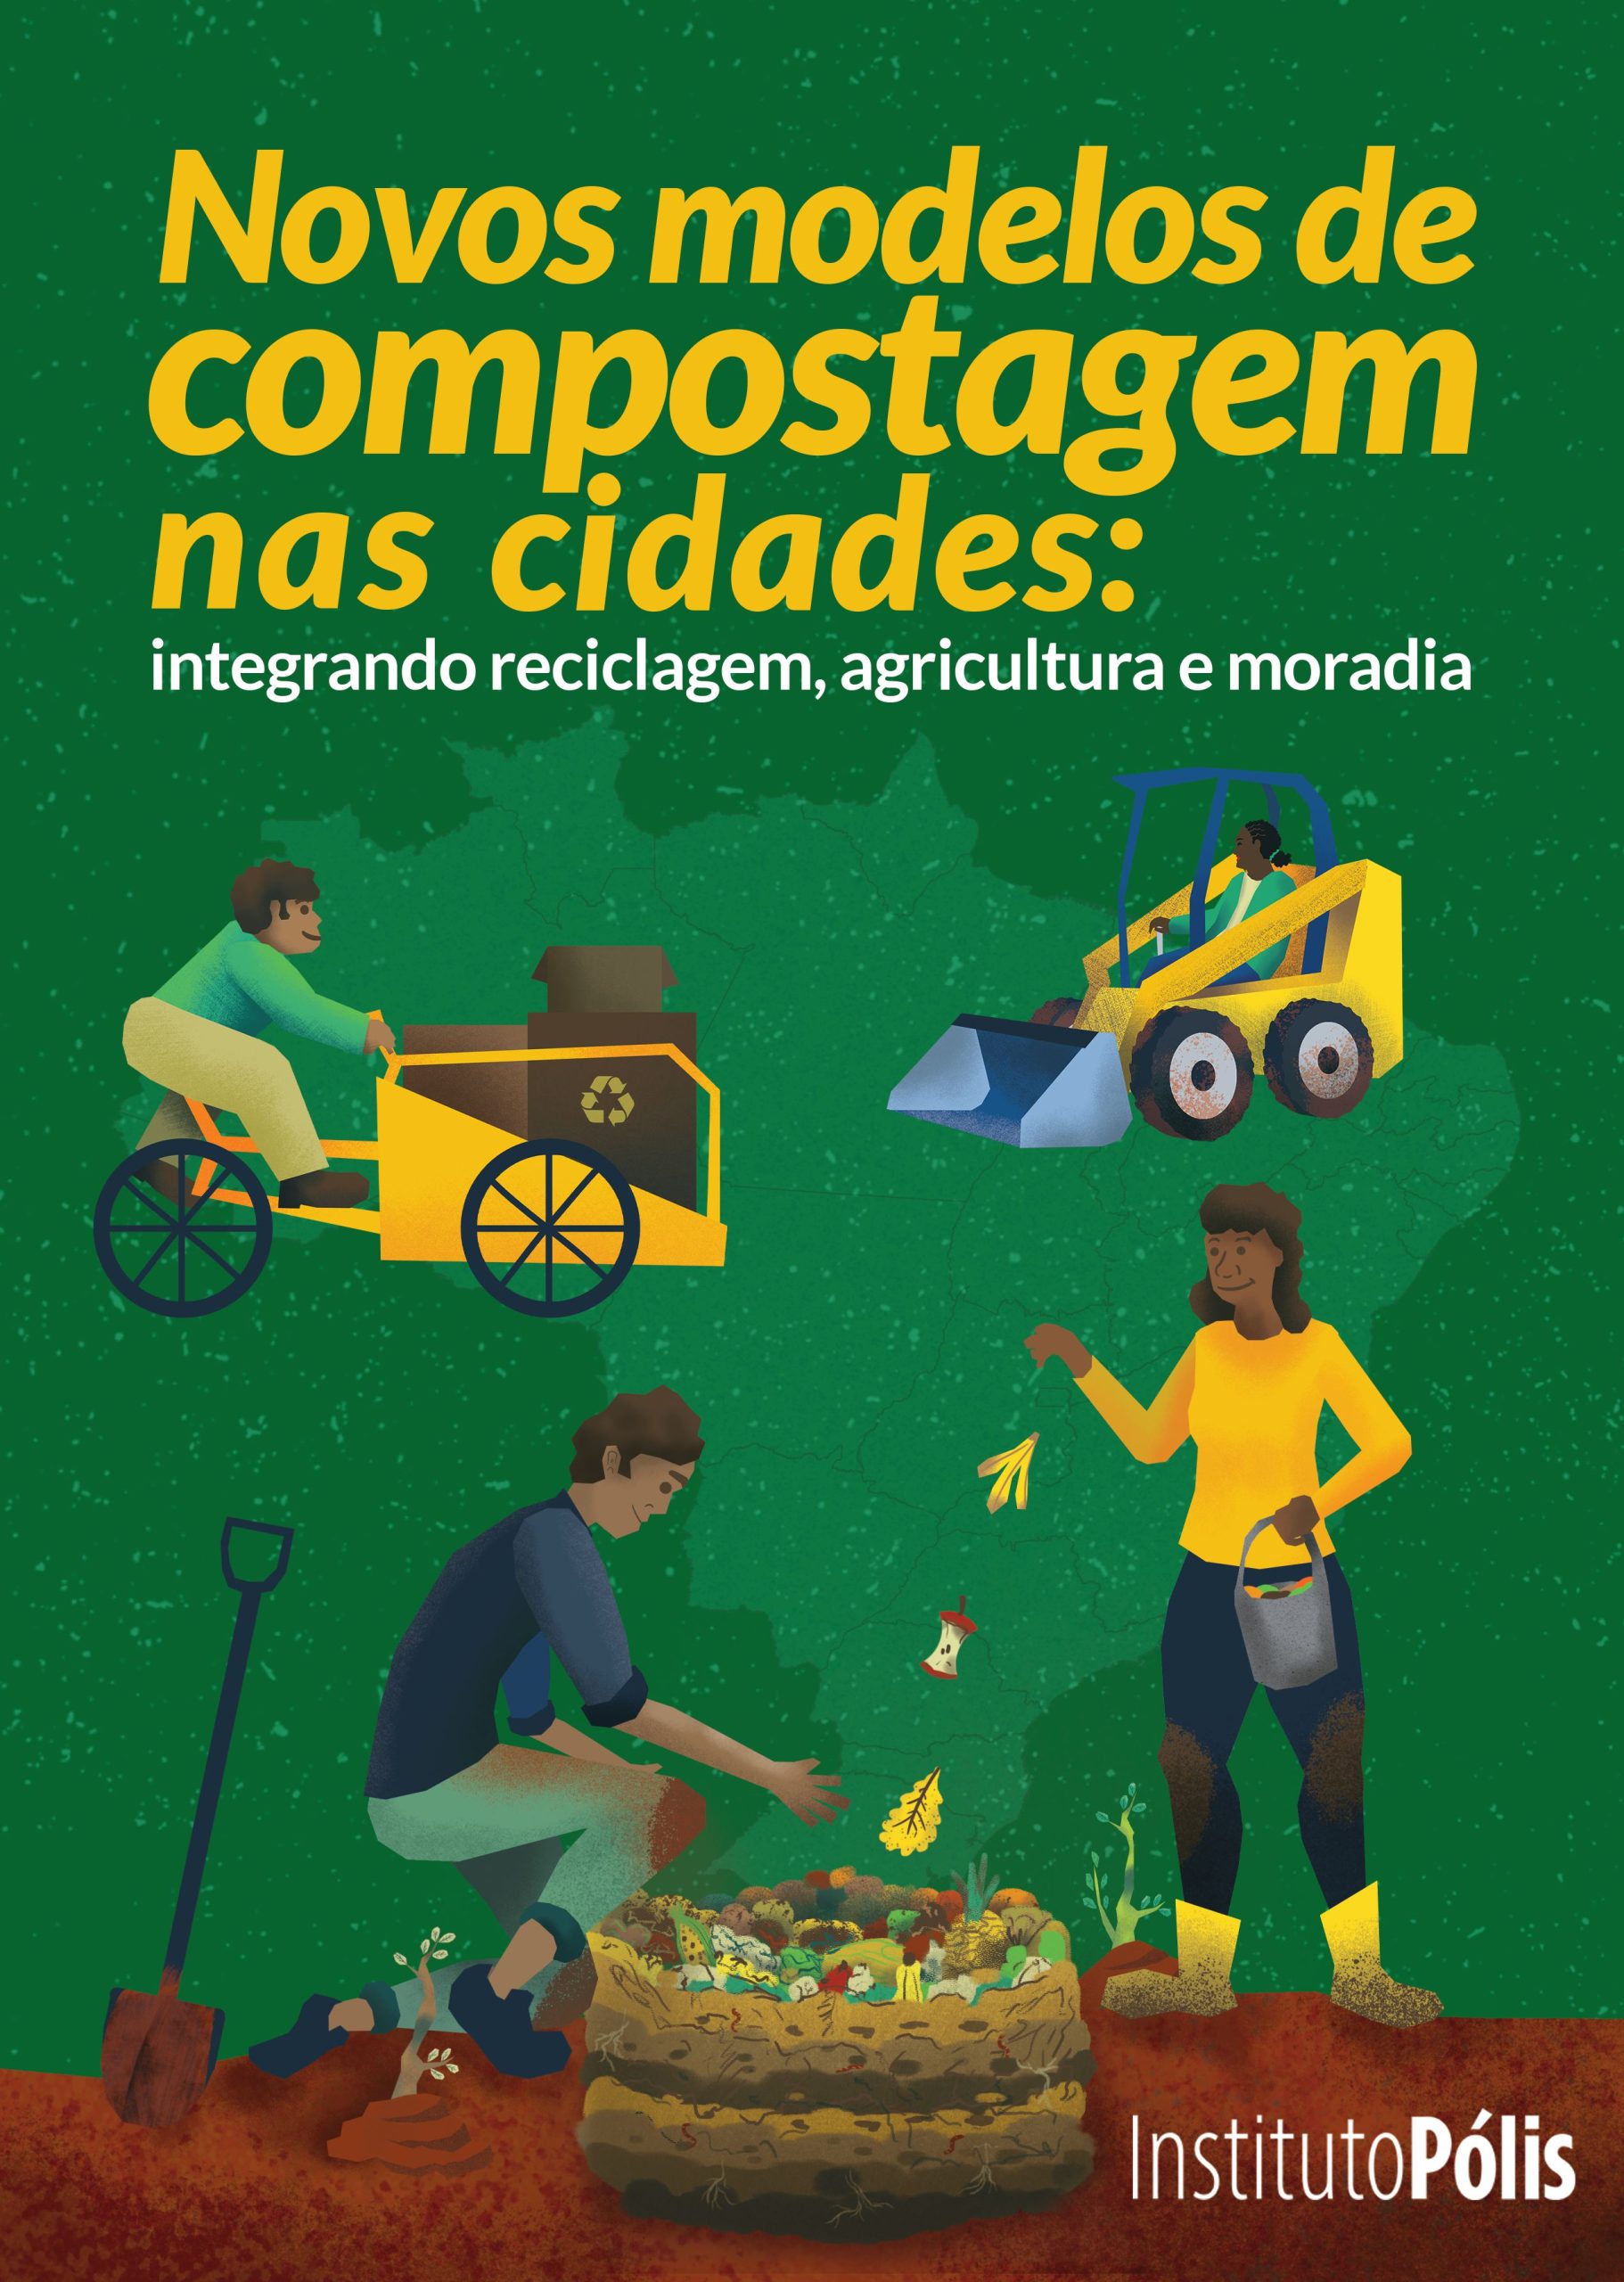 Capa do estudo "Novo modelos de compostagem nas cidades: integrando reciclagem, agricultura e moradia"